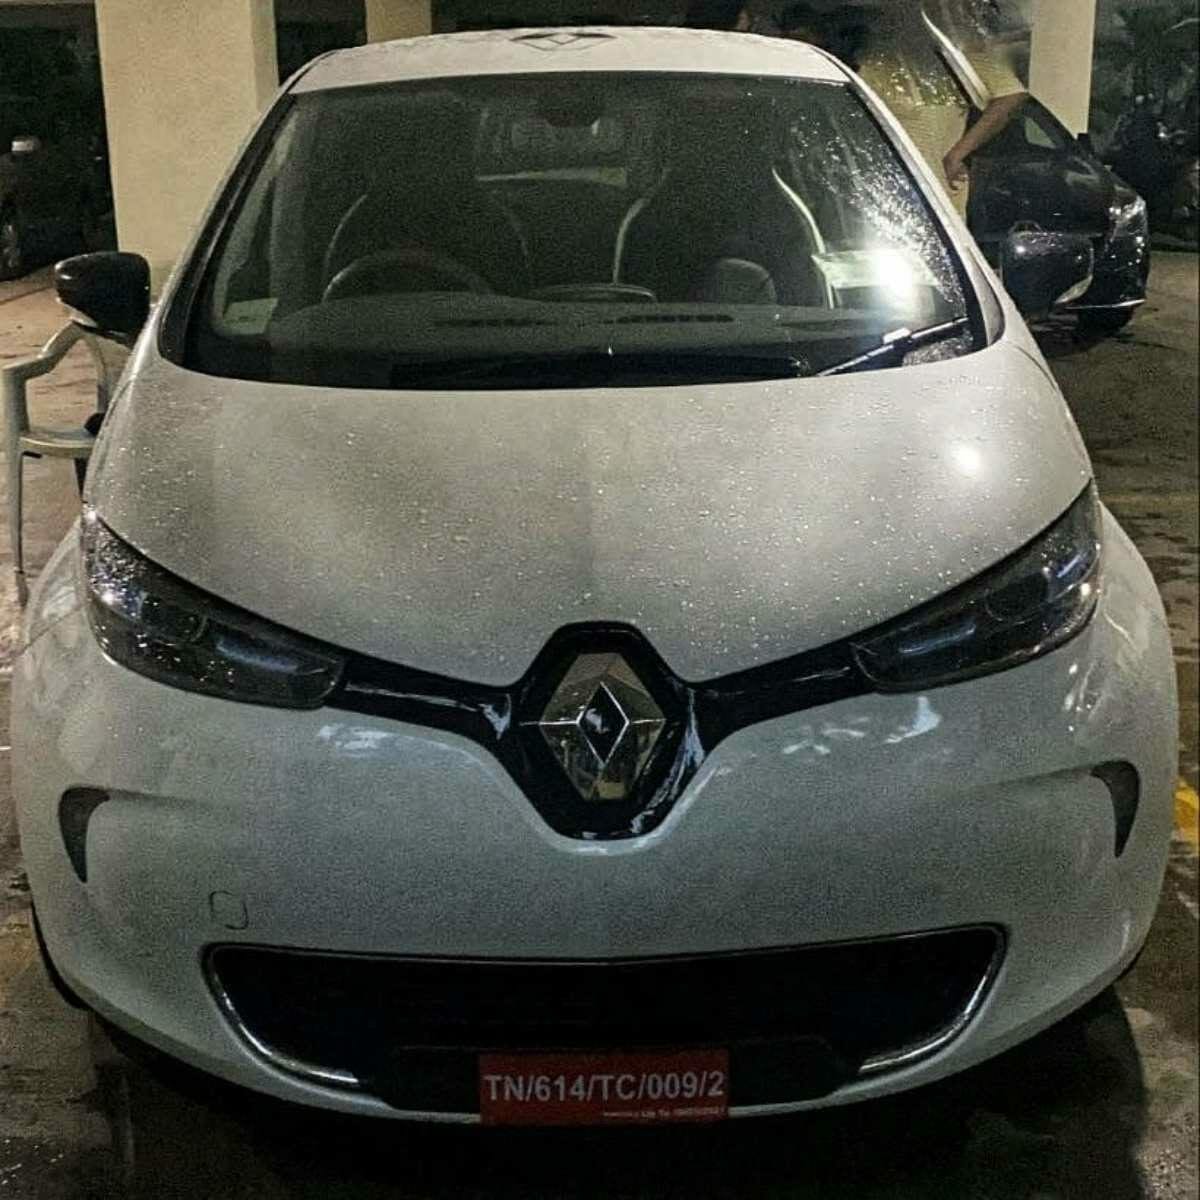 Renault Zoe EV Spied